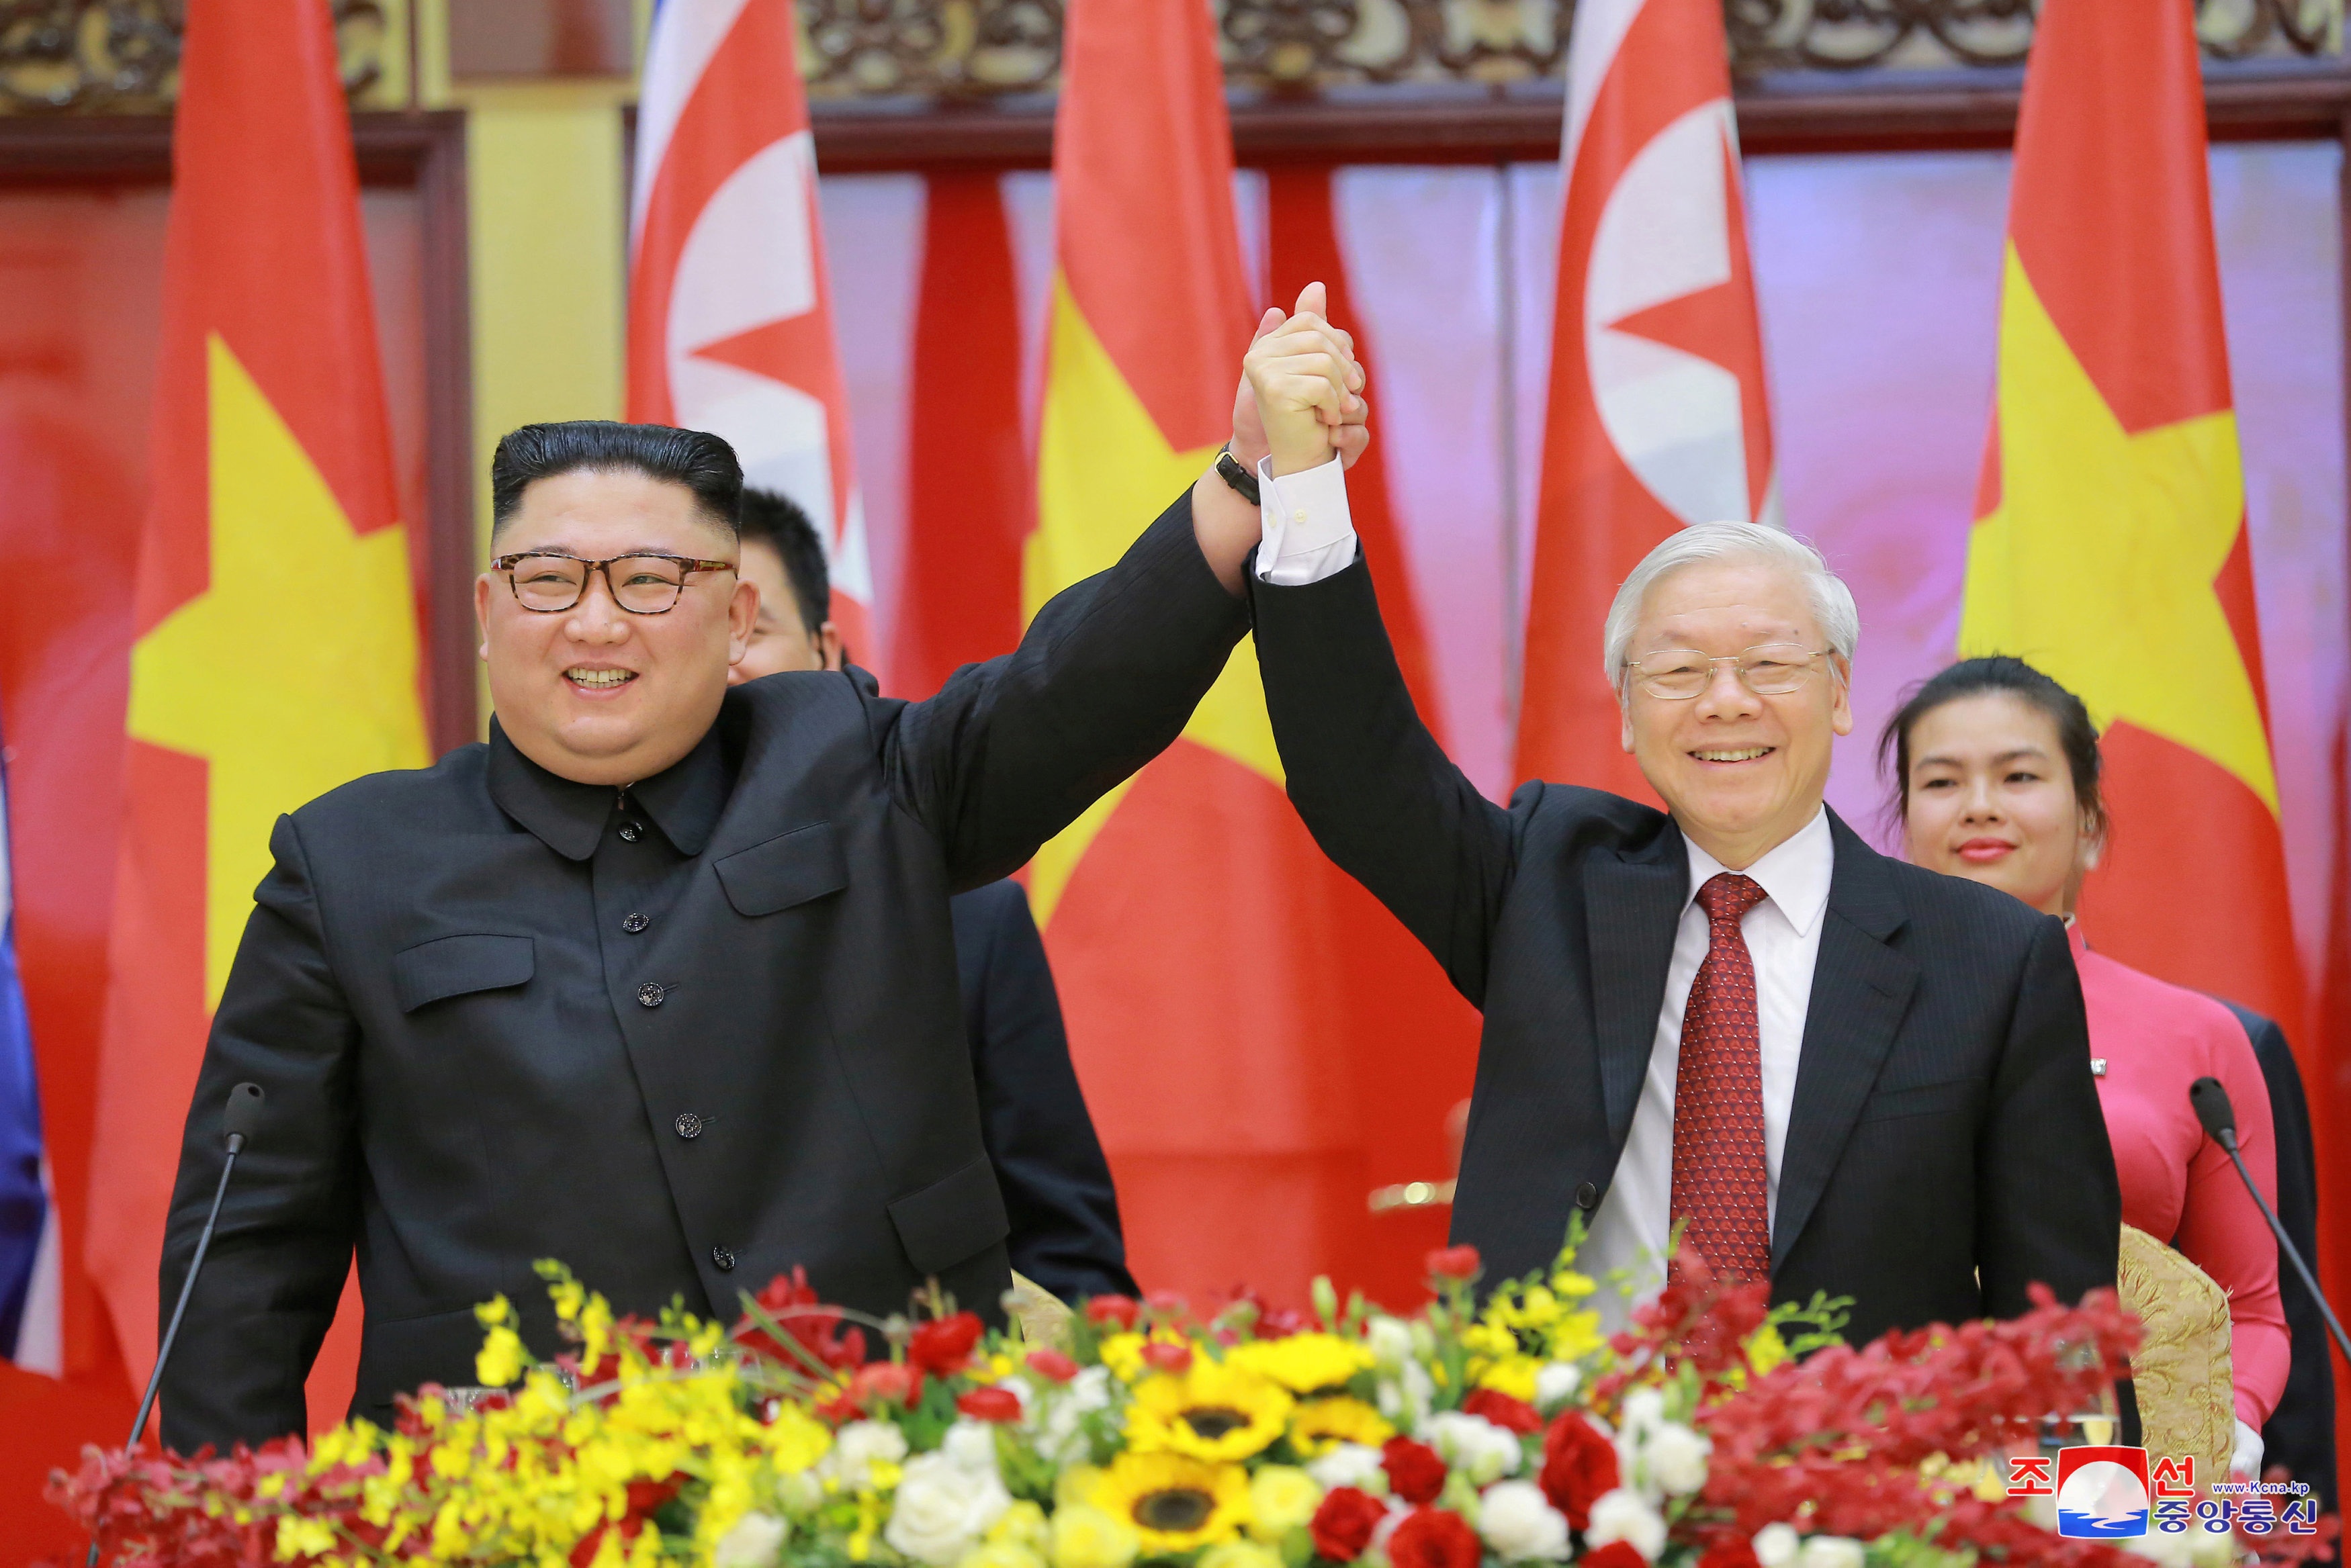 Ông Kim Jong-un muốn cải thiện quan hệ với Việt Nam trên mọi lĩnh vực